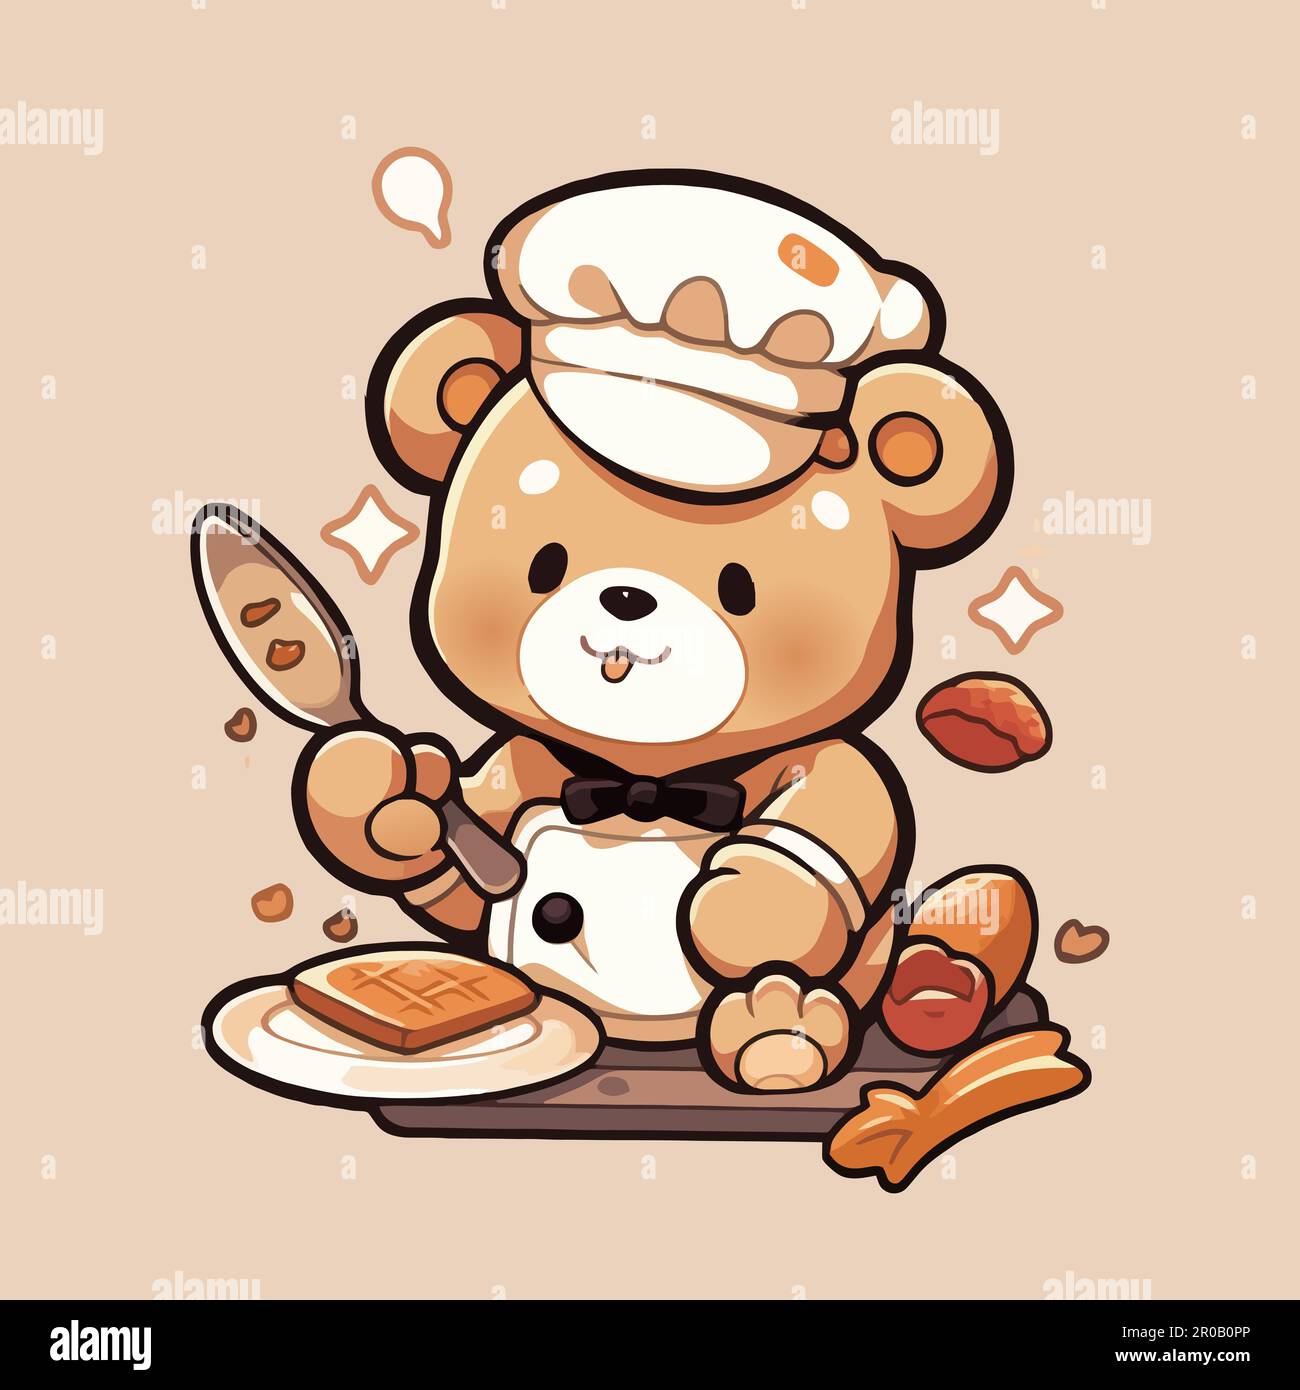 Un ours en peluche cuit avec un morceau de pain grillé Image